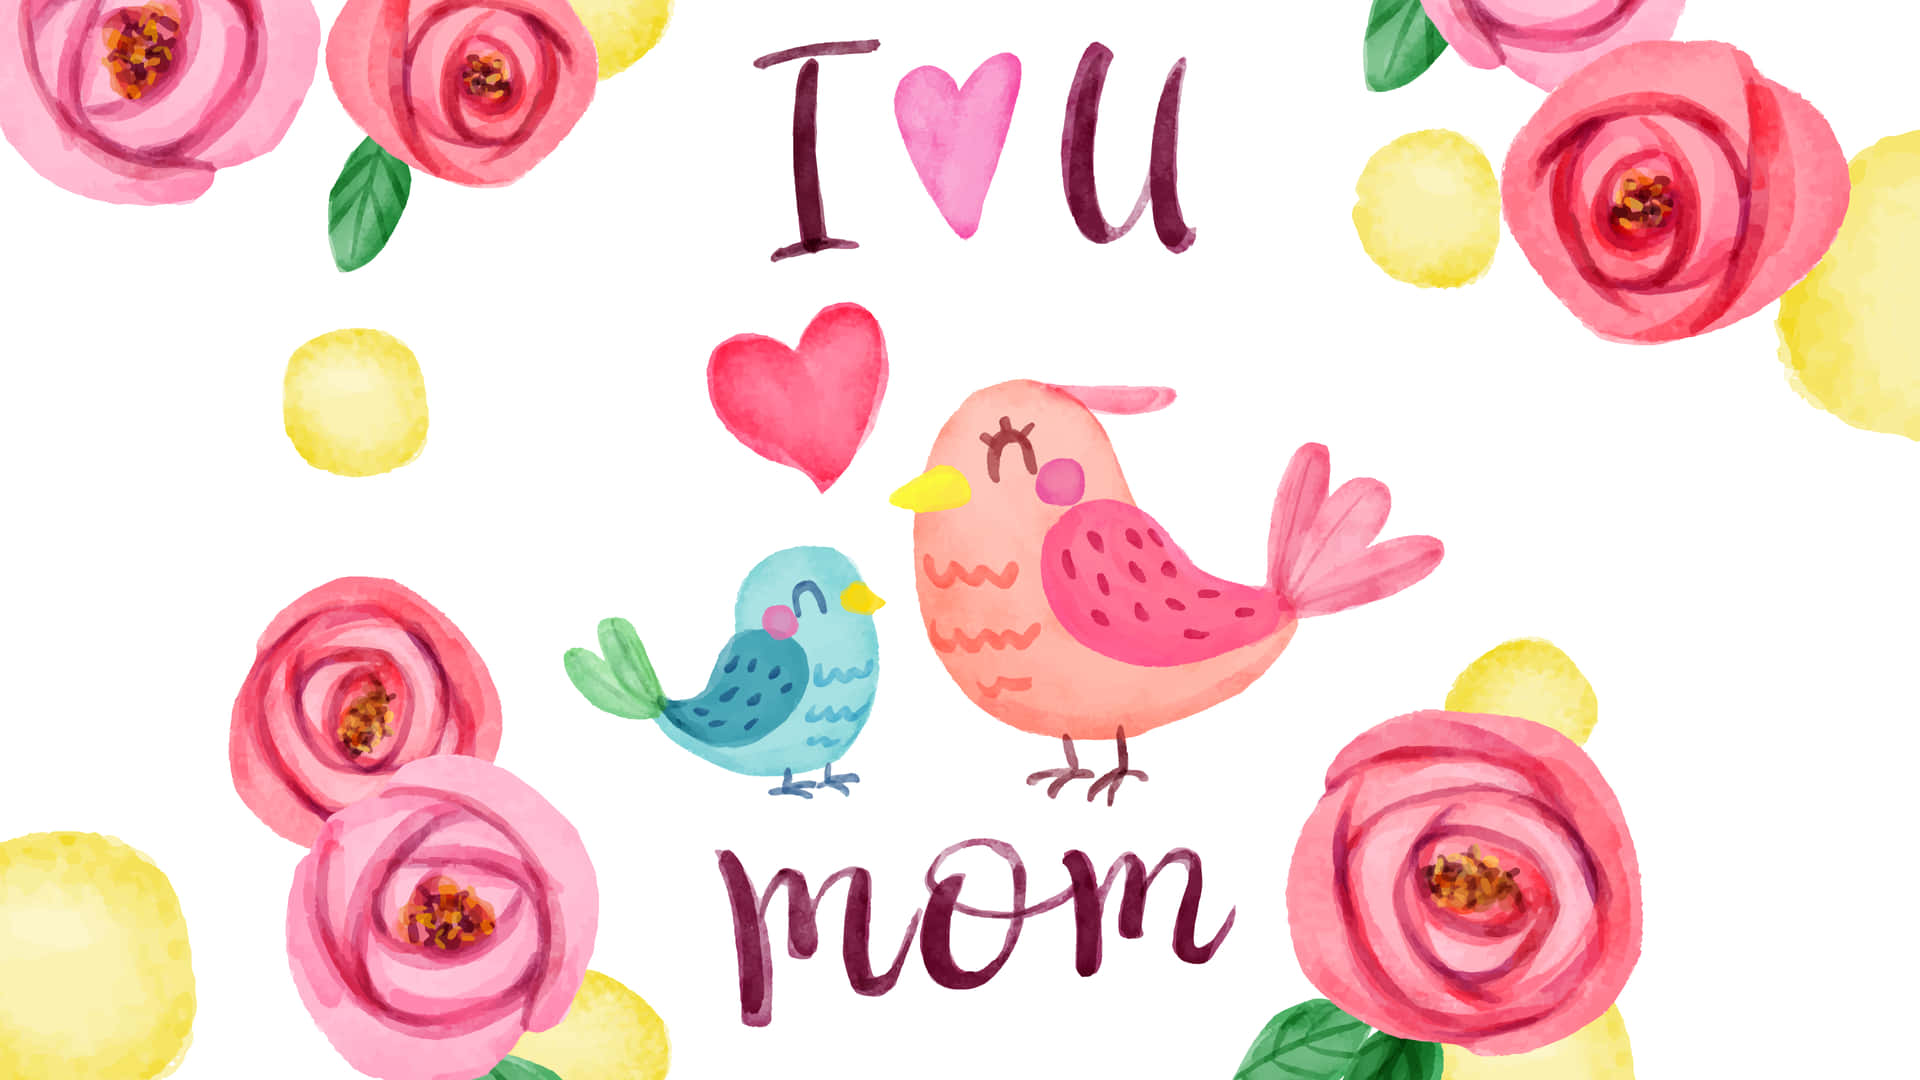 Celebraogni Madre Con Amore E Apprezzamento In Questo Felice Giorno Della Mamma Sfondo